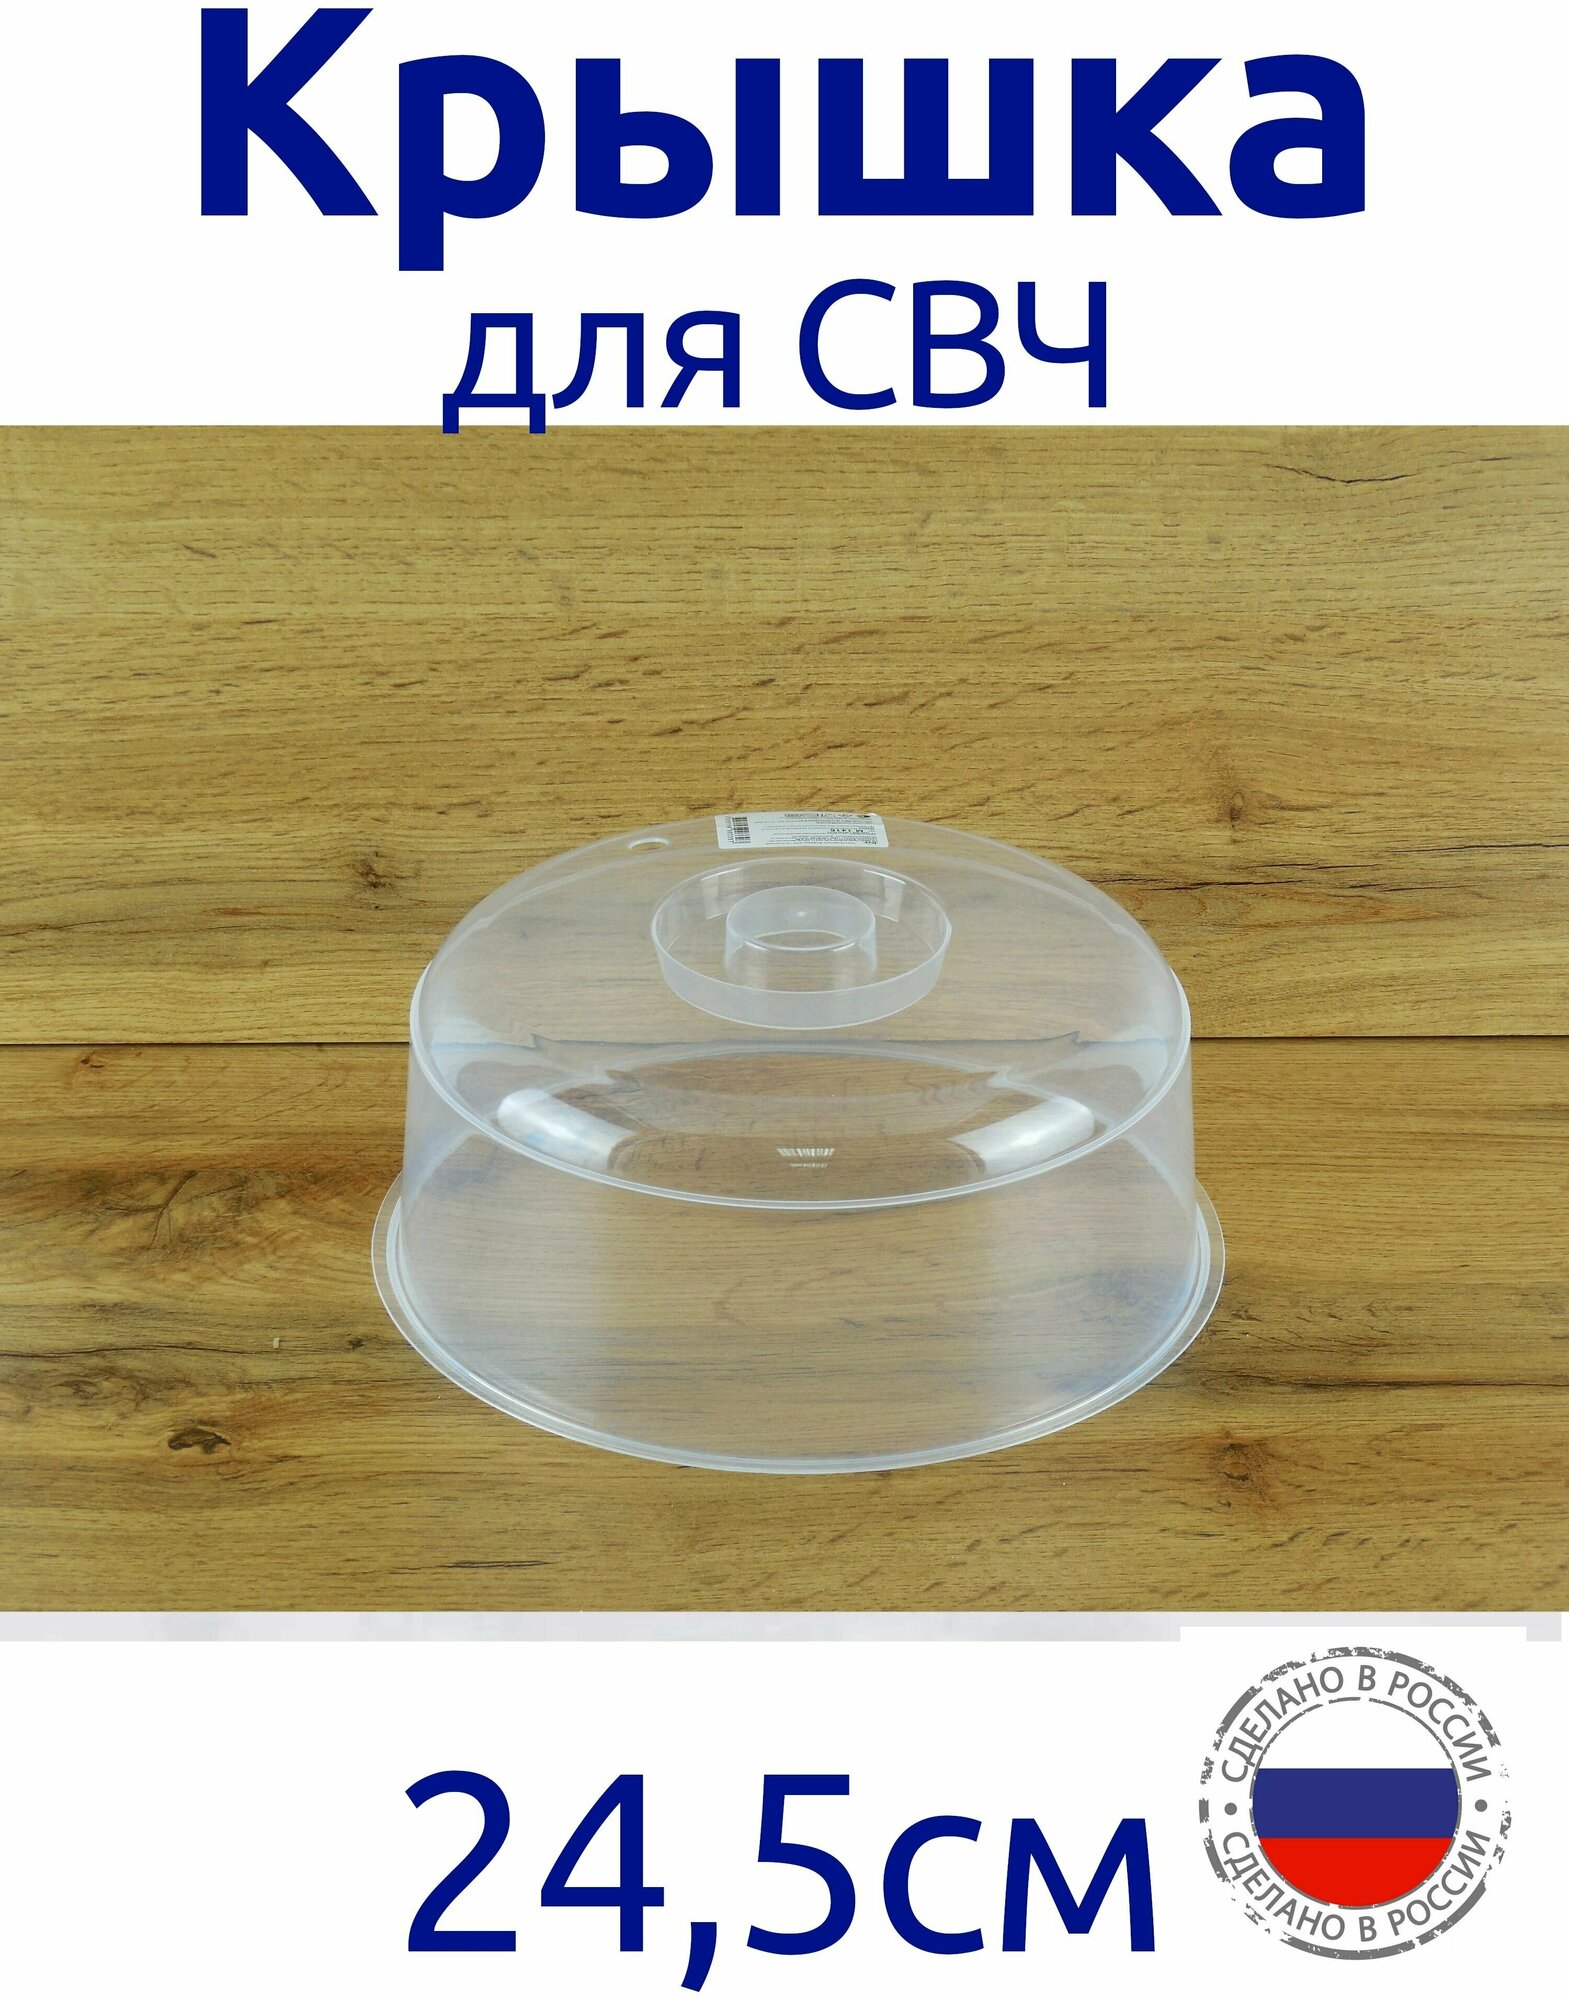 Крышка для СВЧ, для защиты от брызг, для сохранения блюда, 24,5 см